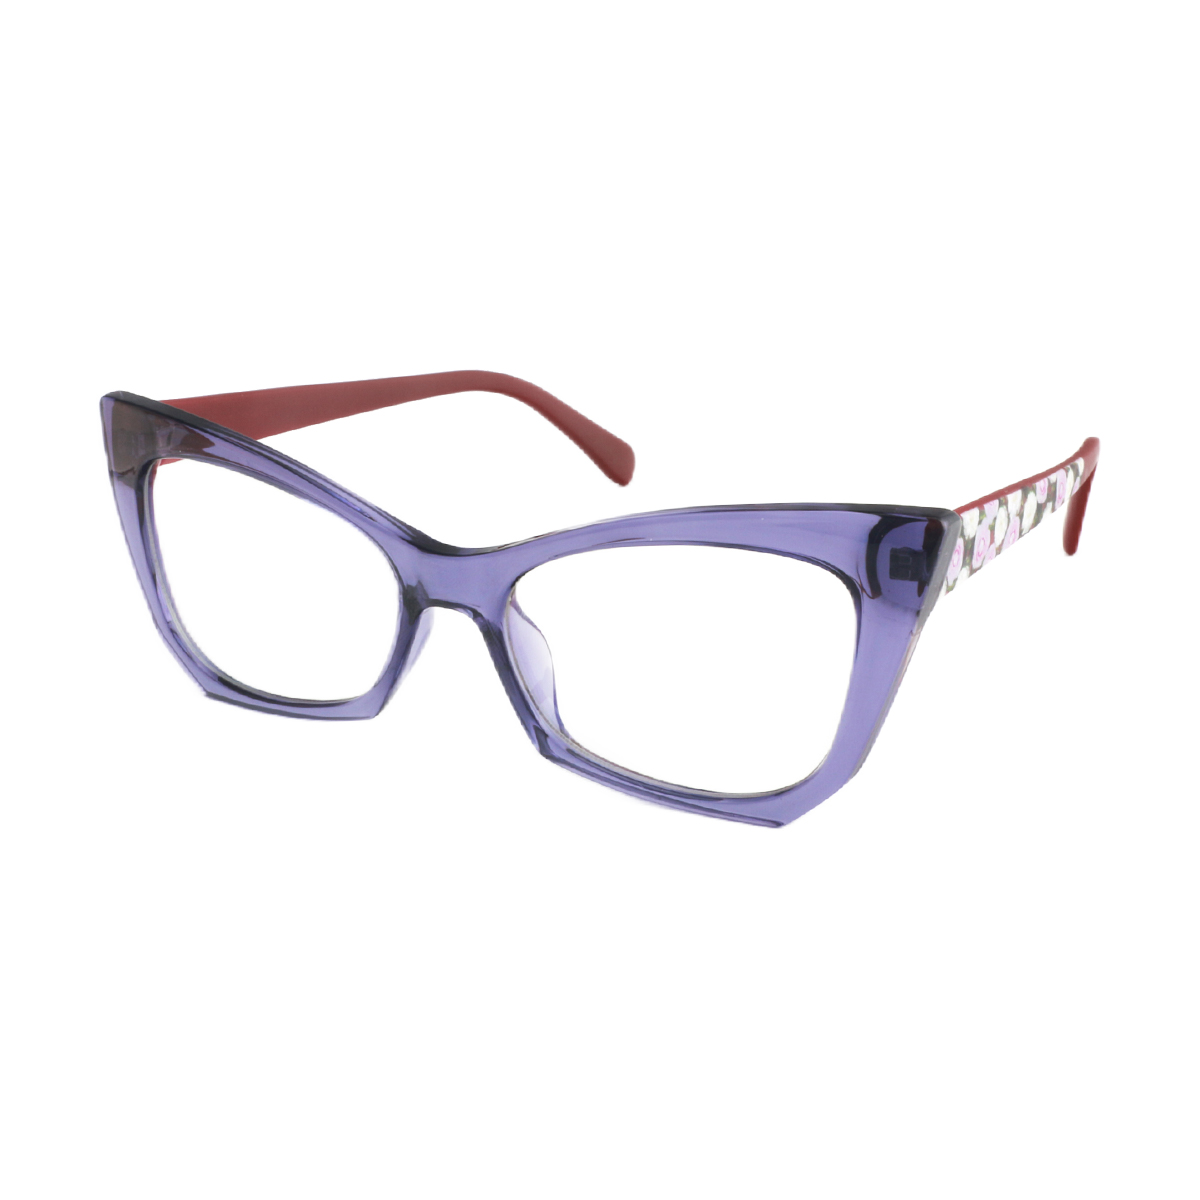 Arce - Cat-eye Purple Reading Glasses for Women